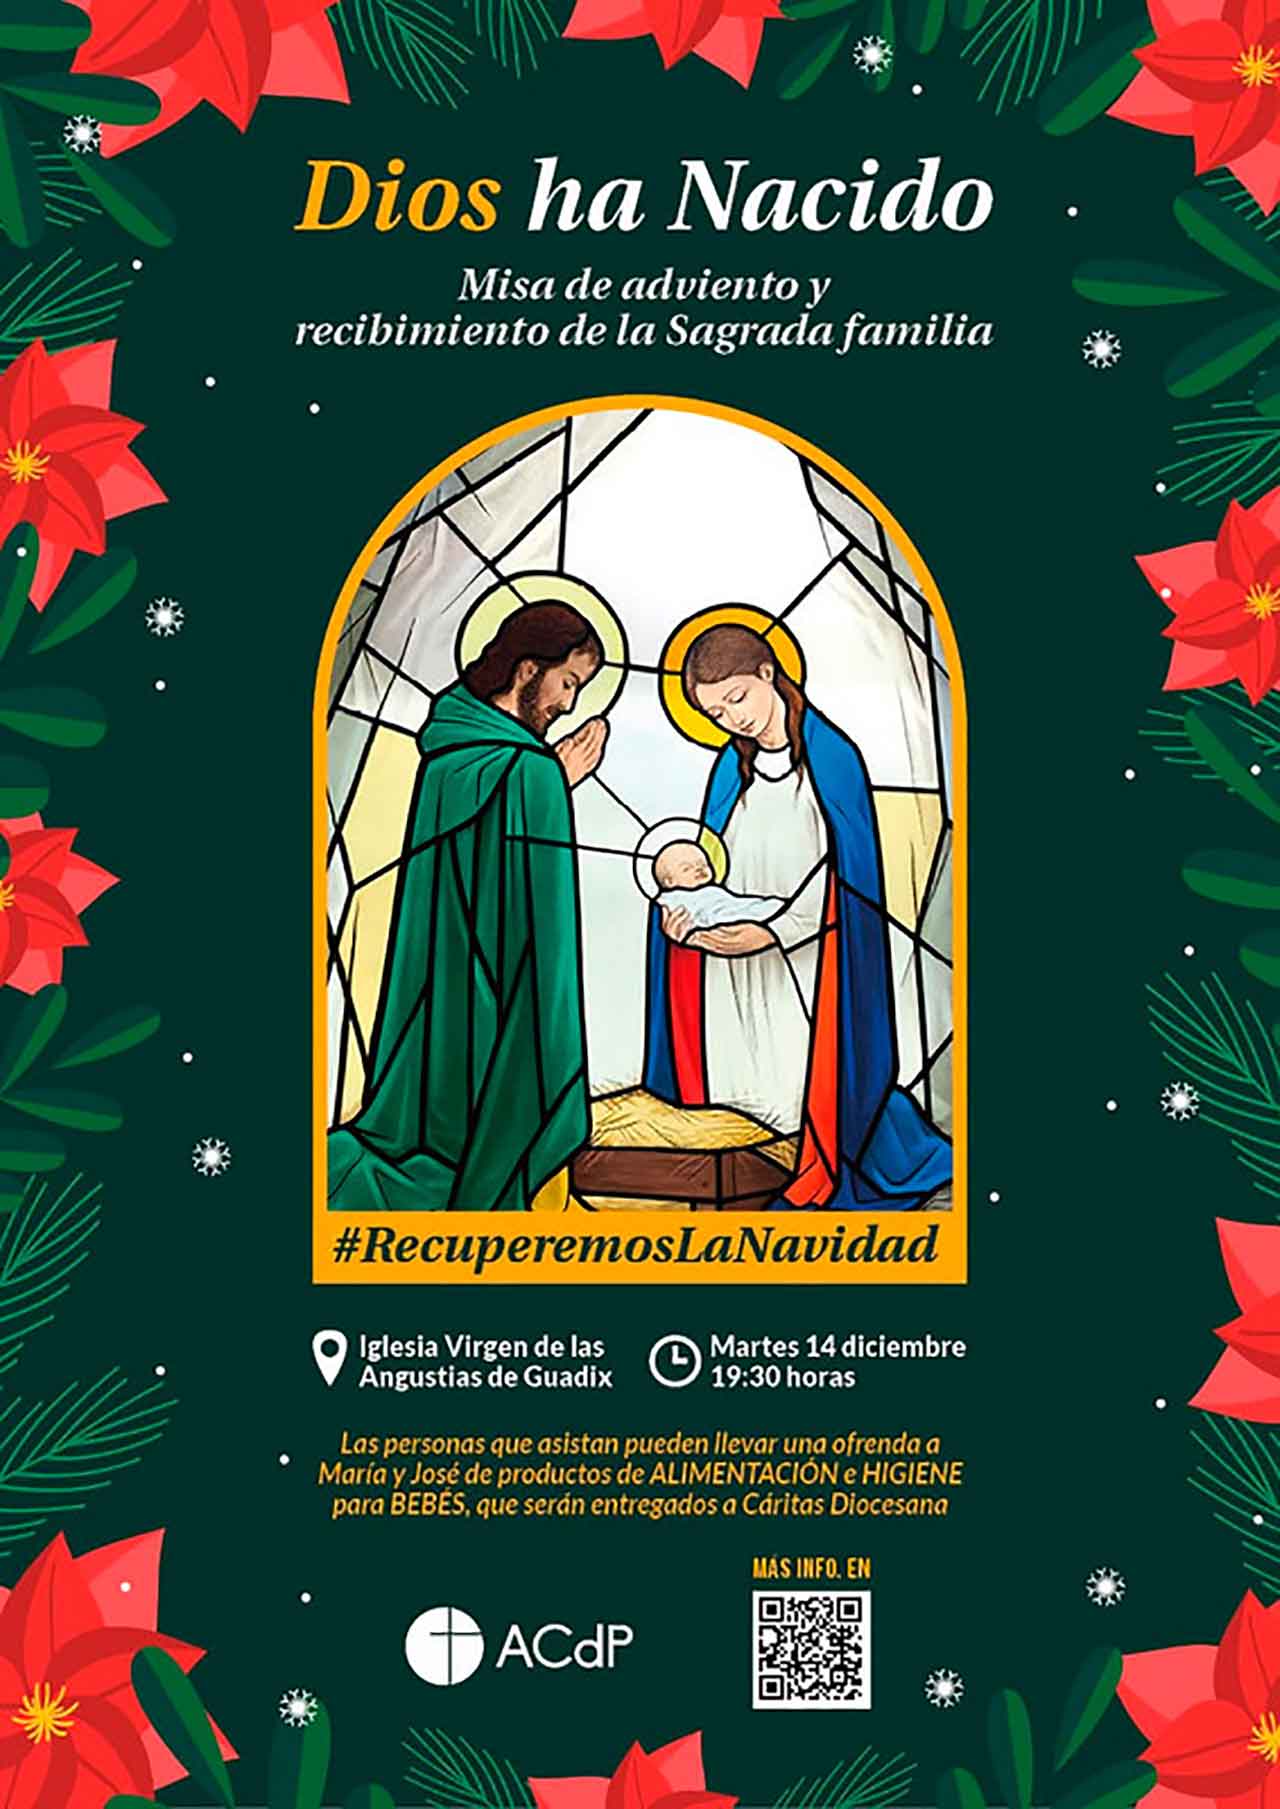 #RecuperemosLaNavidad, una campaña para recuperar el sentido cristiano de la Navidad